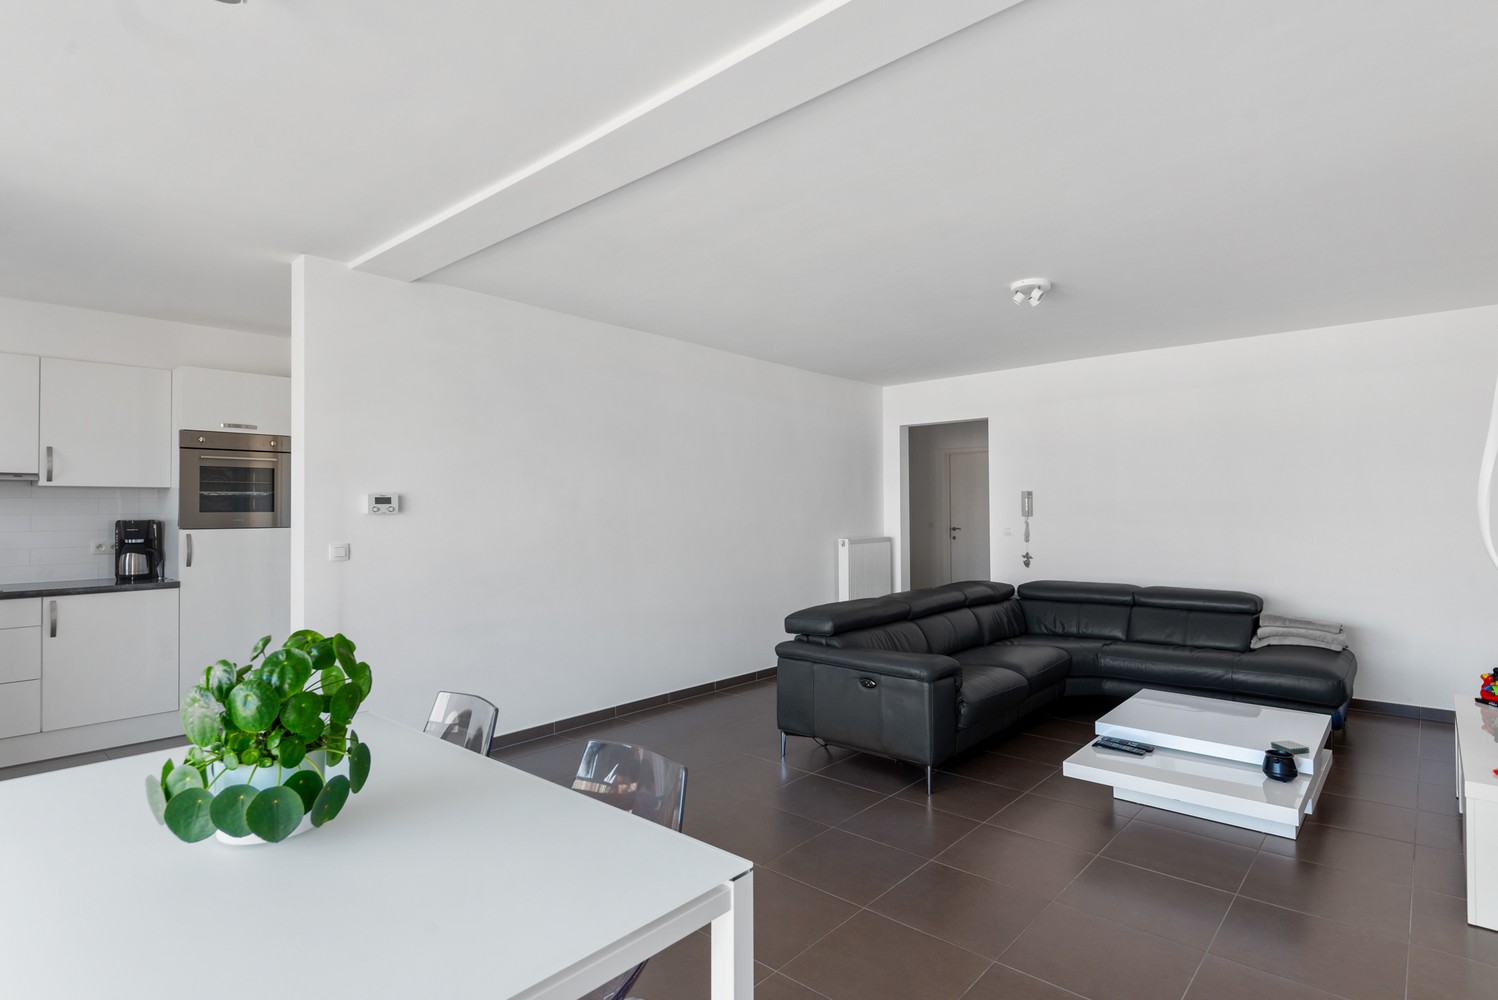 Ruim, lichtrijk & energiezuinig appartement met 2 slaapkamers & zonnig terras in Deurne! afbeelding 9